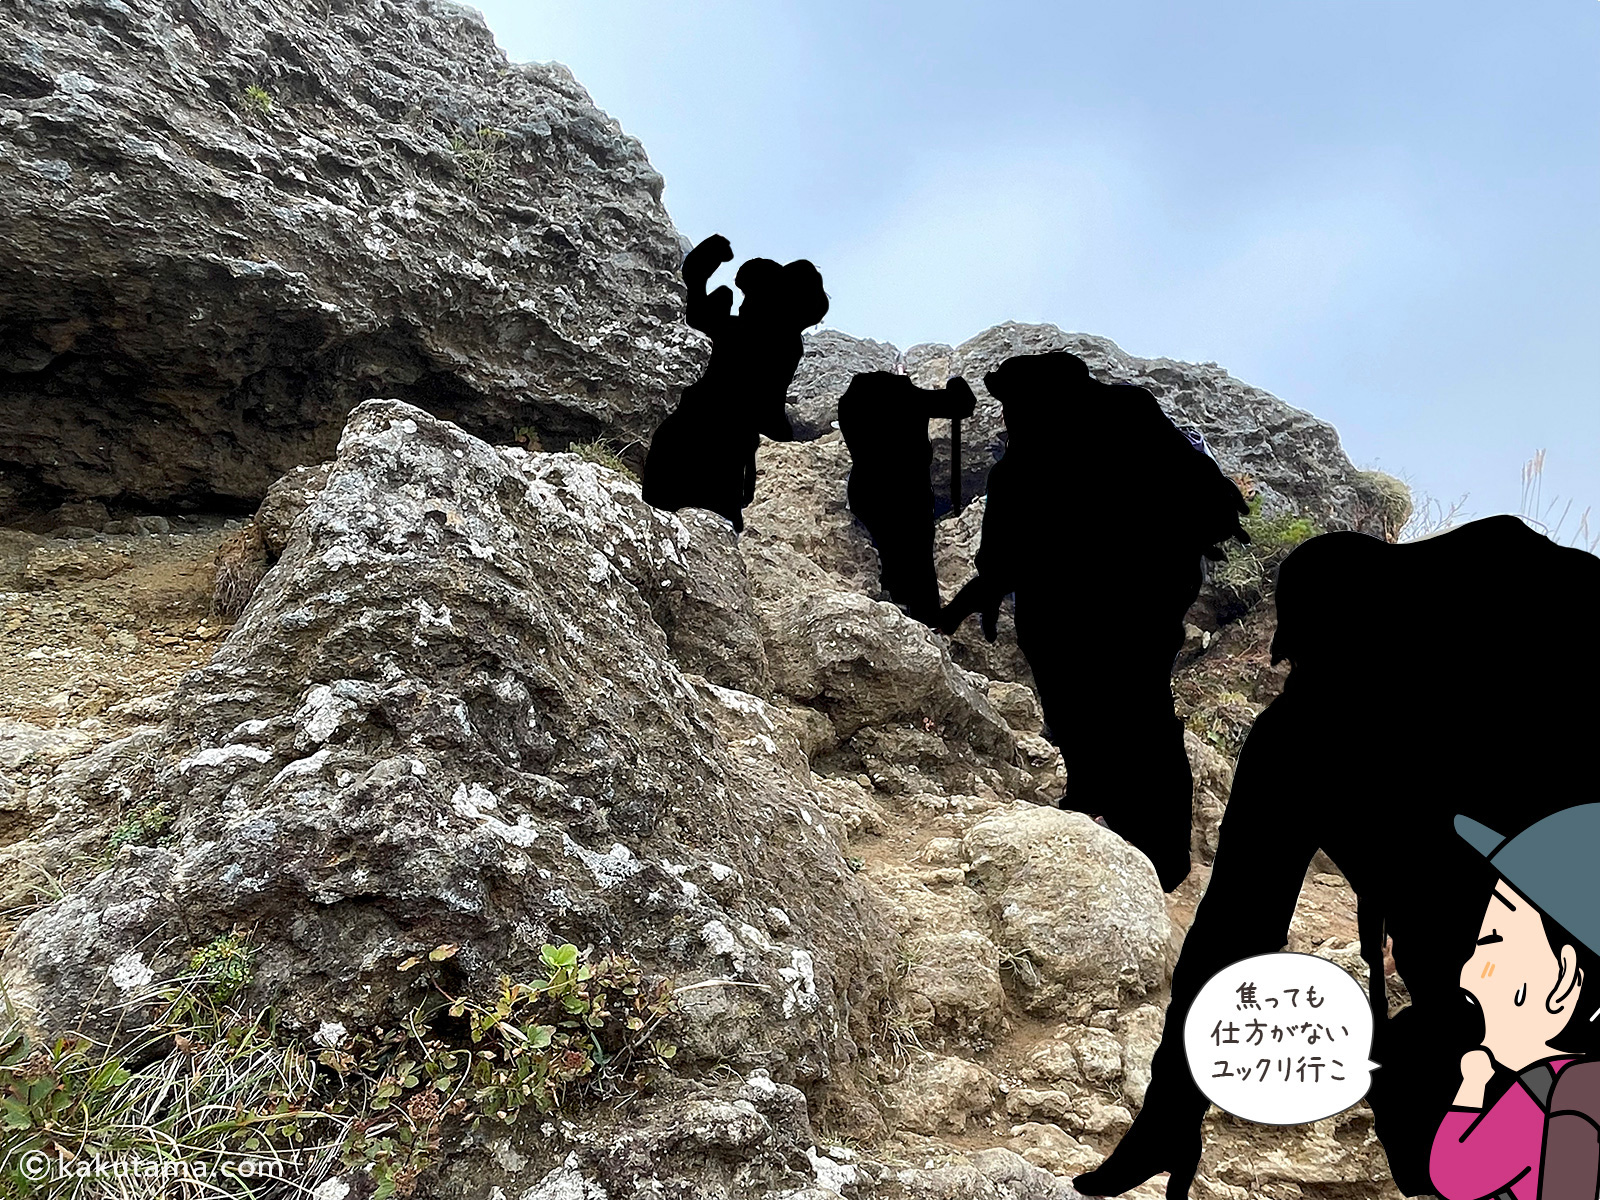 安達太良山の鎖場と岩場の写真と登山者のイラスト